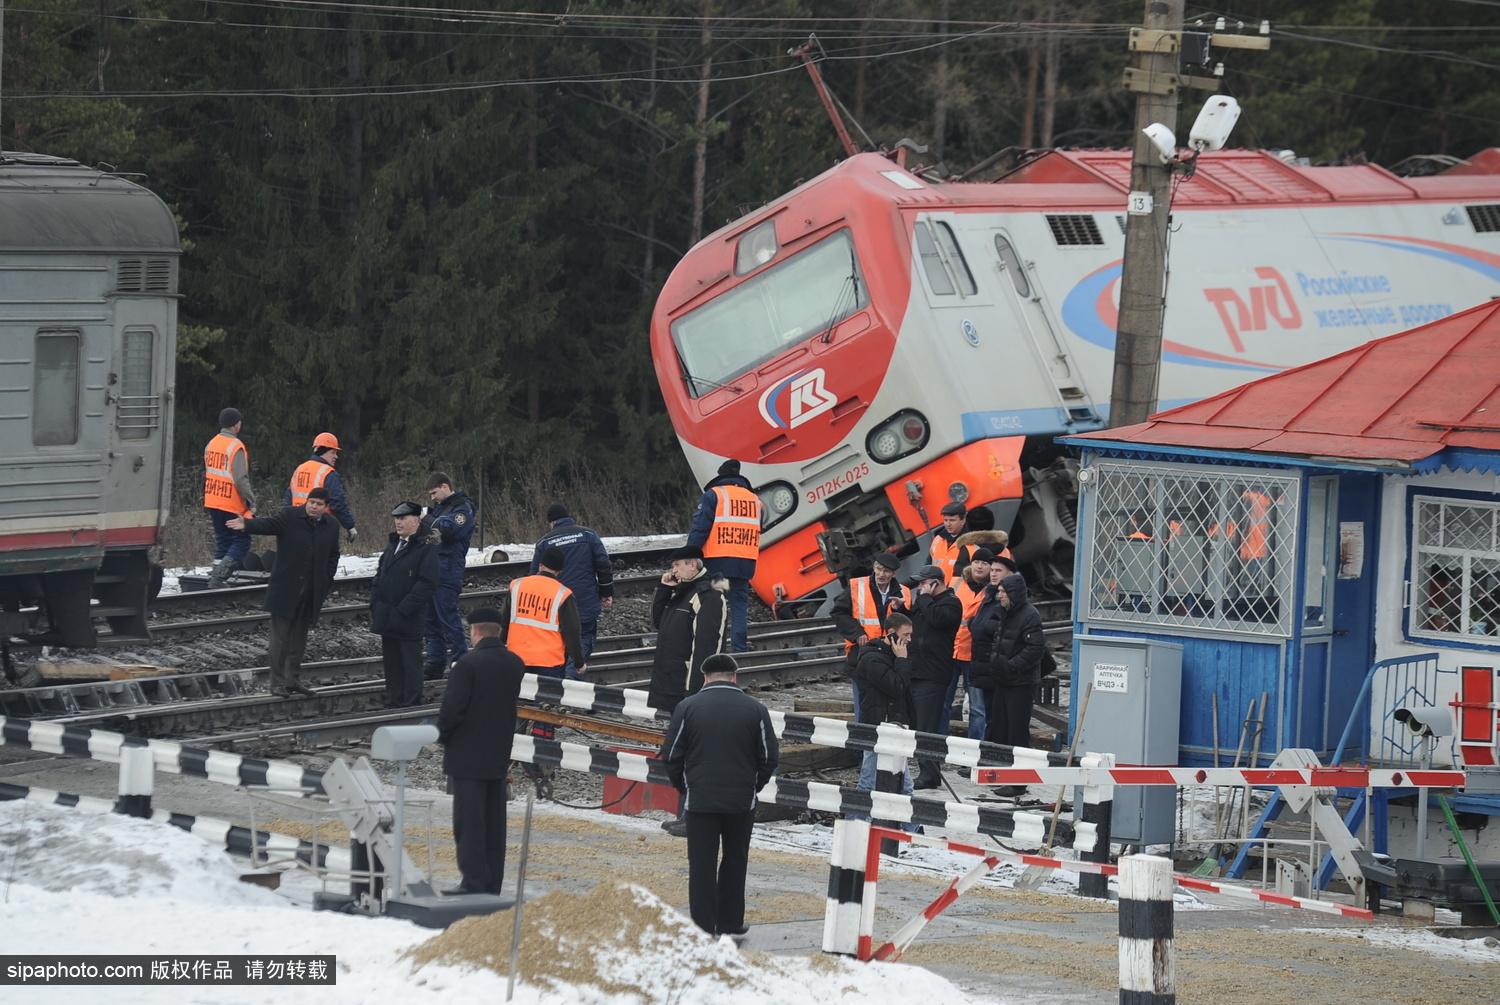 中铝公司货运火车脱轨6人失联 搜救出4人已无生命体征 - 我们视频 - 新京报网